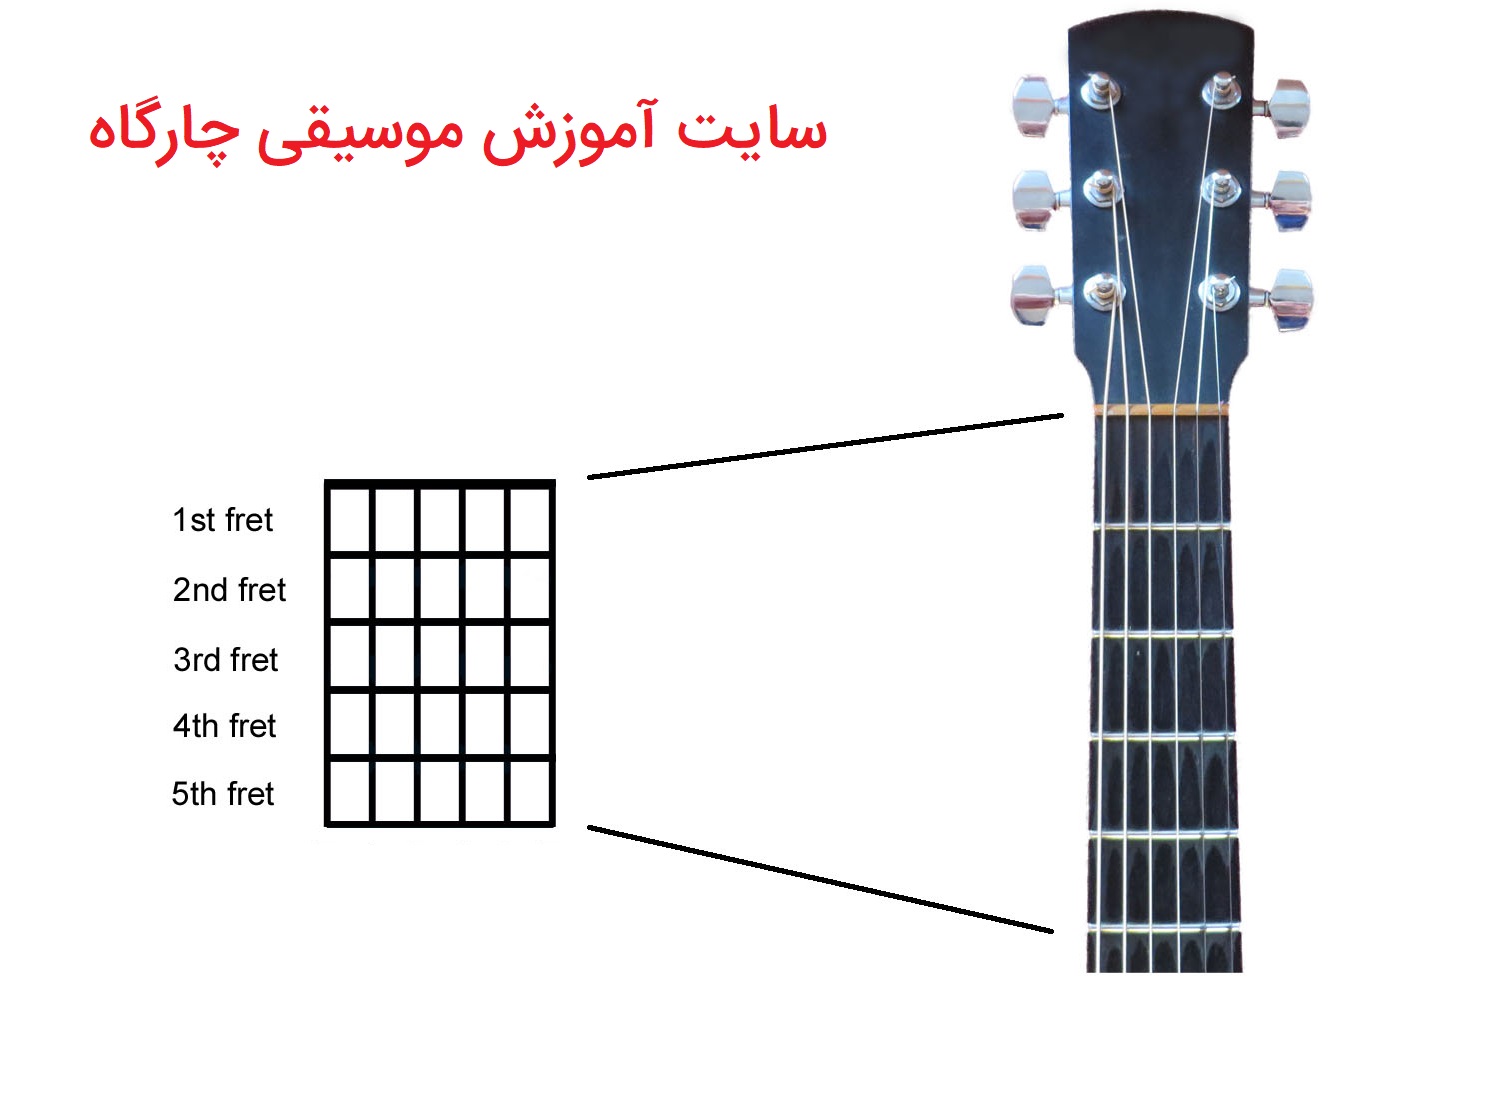 آموزش نت خوانی گیتار -نمودار اکورد ها تشکیل شده است از خطوط عمودی و افقی که بیانگر سیم ها و فرت ها می باشند